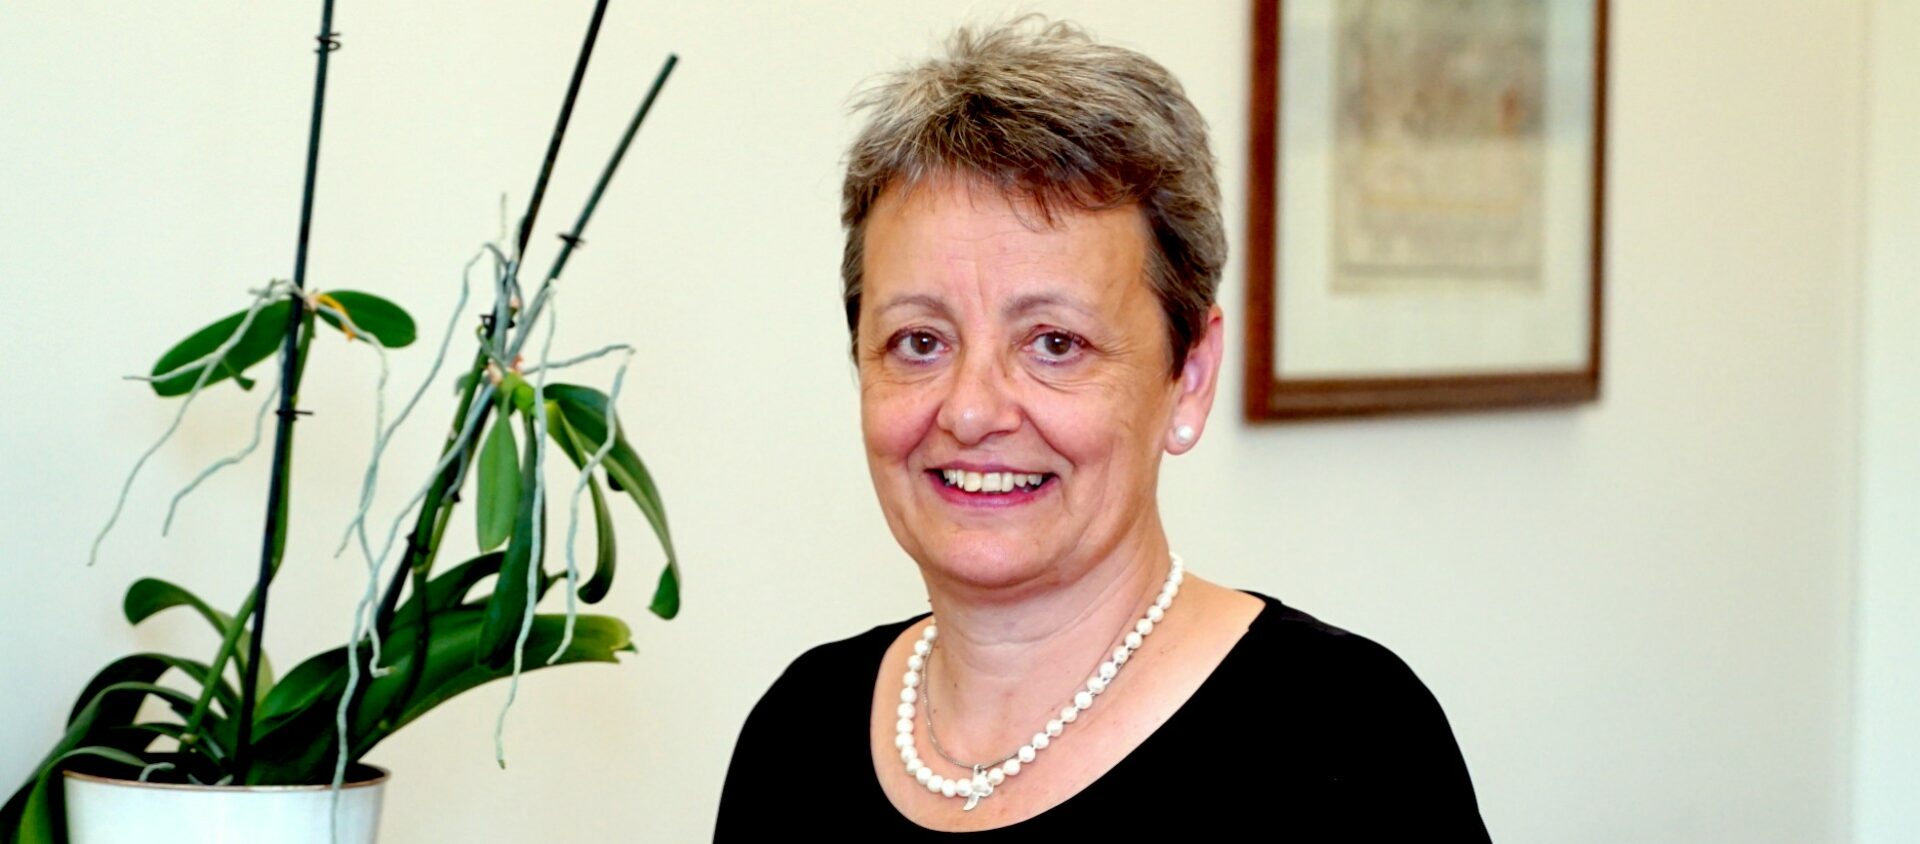 Marianne Pohl-Henzen, déléguée de l’évêque pour le "Deutschfreiburg" | © Georges Scherrer